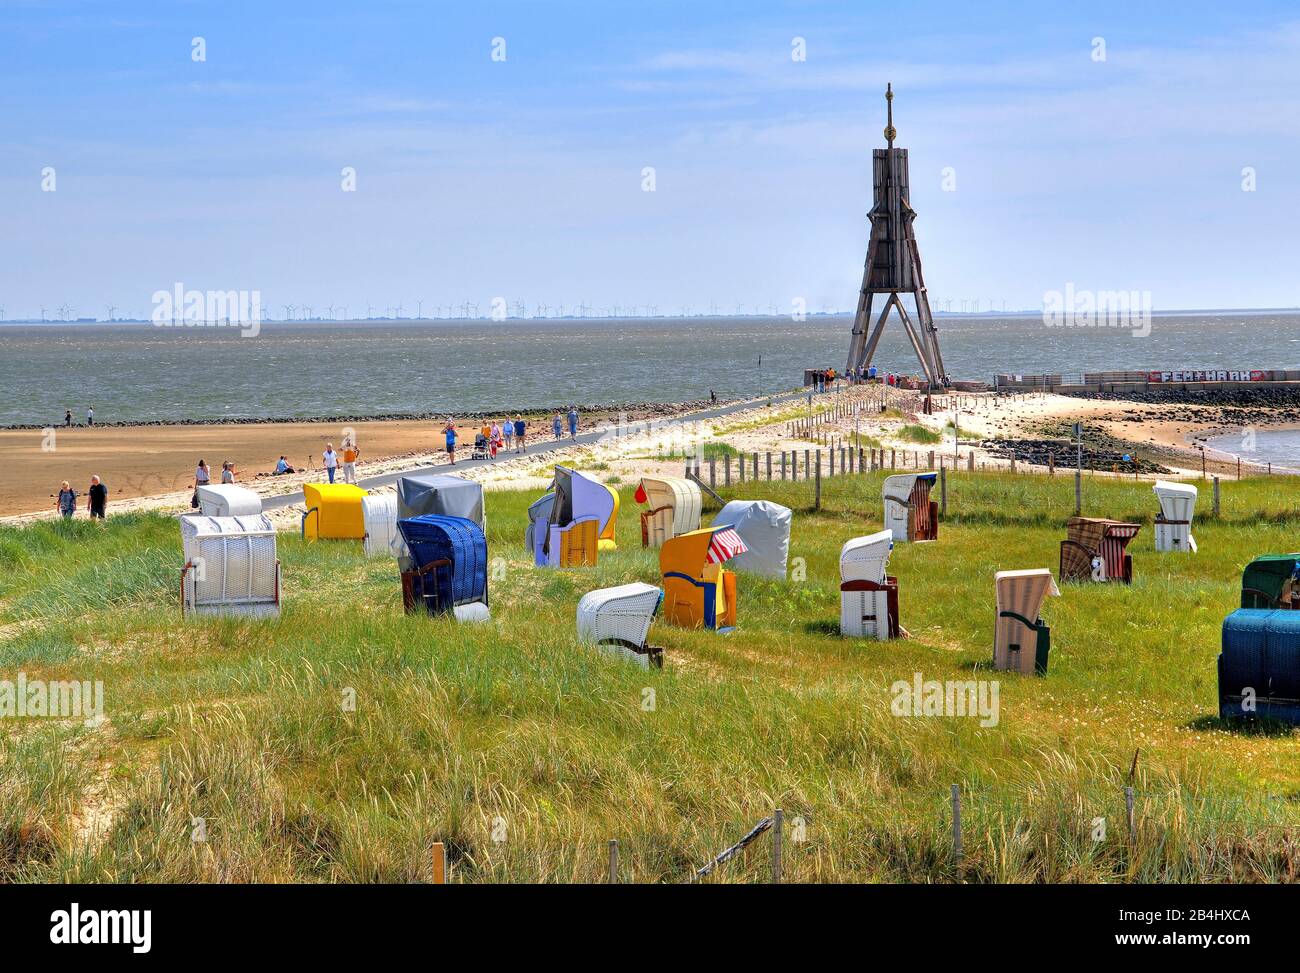 Spiaggia di erba con sedie da spiaggia alla foce dell'Elba con il simbolo del mare Kugelbake nel quartiere Döse, località del Mare del Nord Cuxhaven, estuario dell'Elba, Mare del Nord, costa del Mare del Nord, Bassa Sassonia, Germania Foto Stock